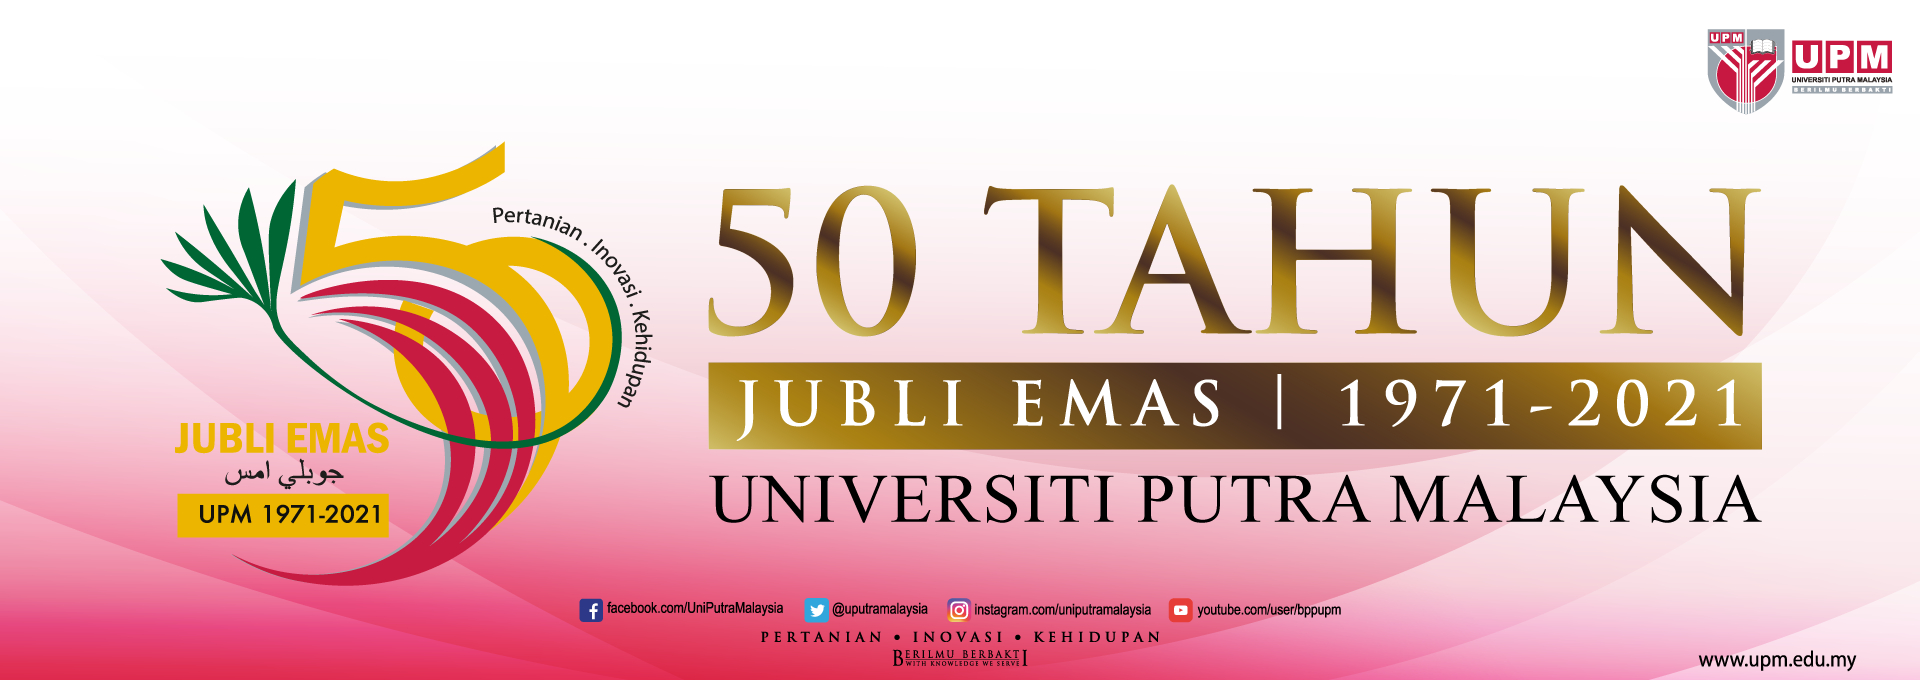 UPM Golden Jubilee Celebration 